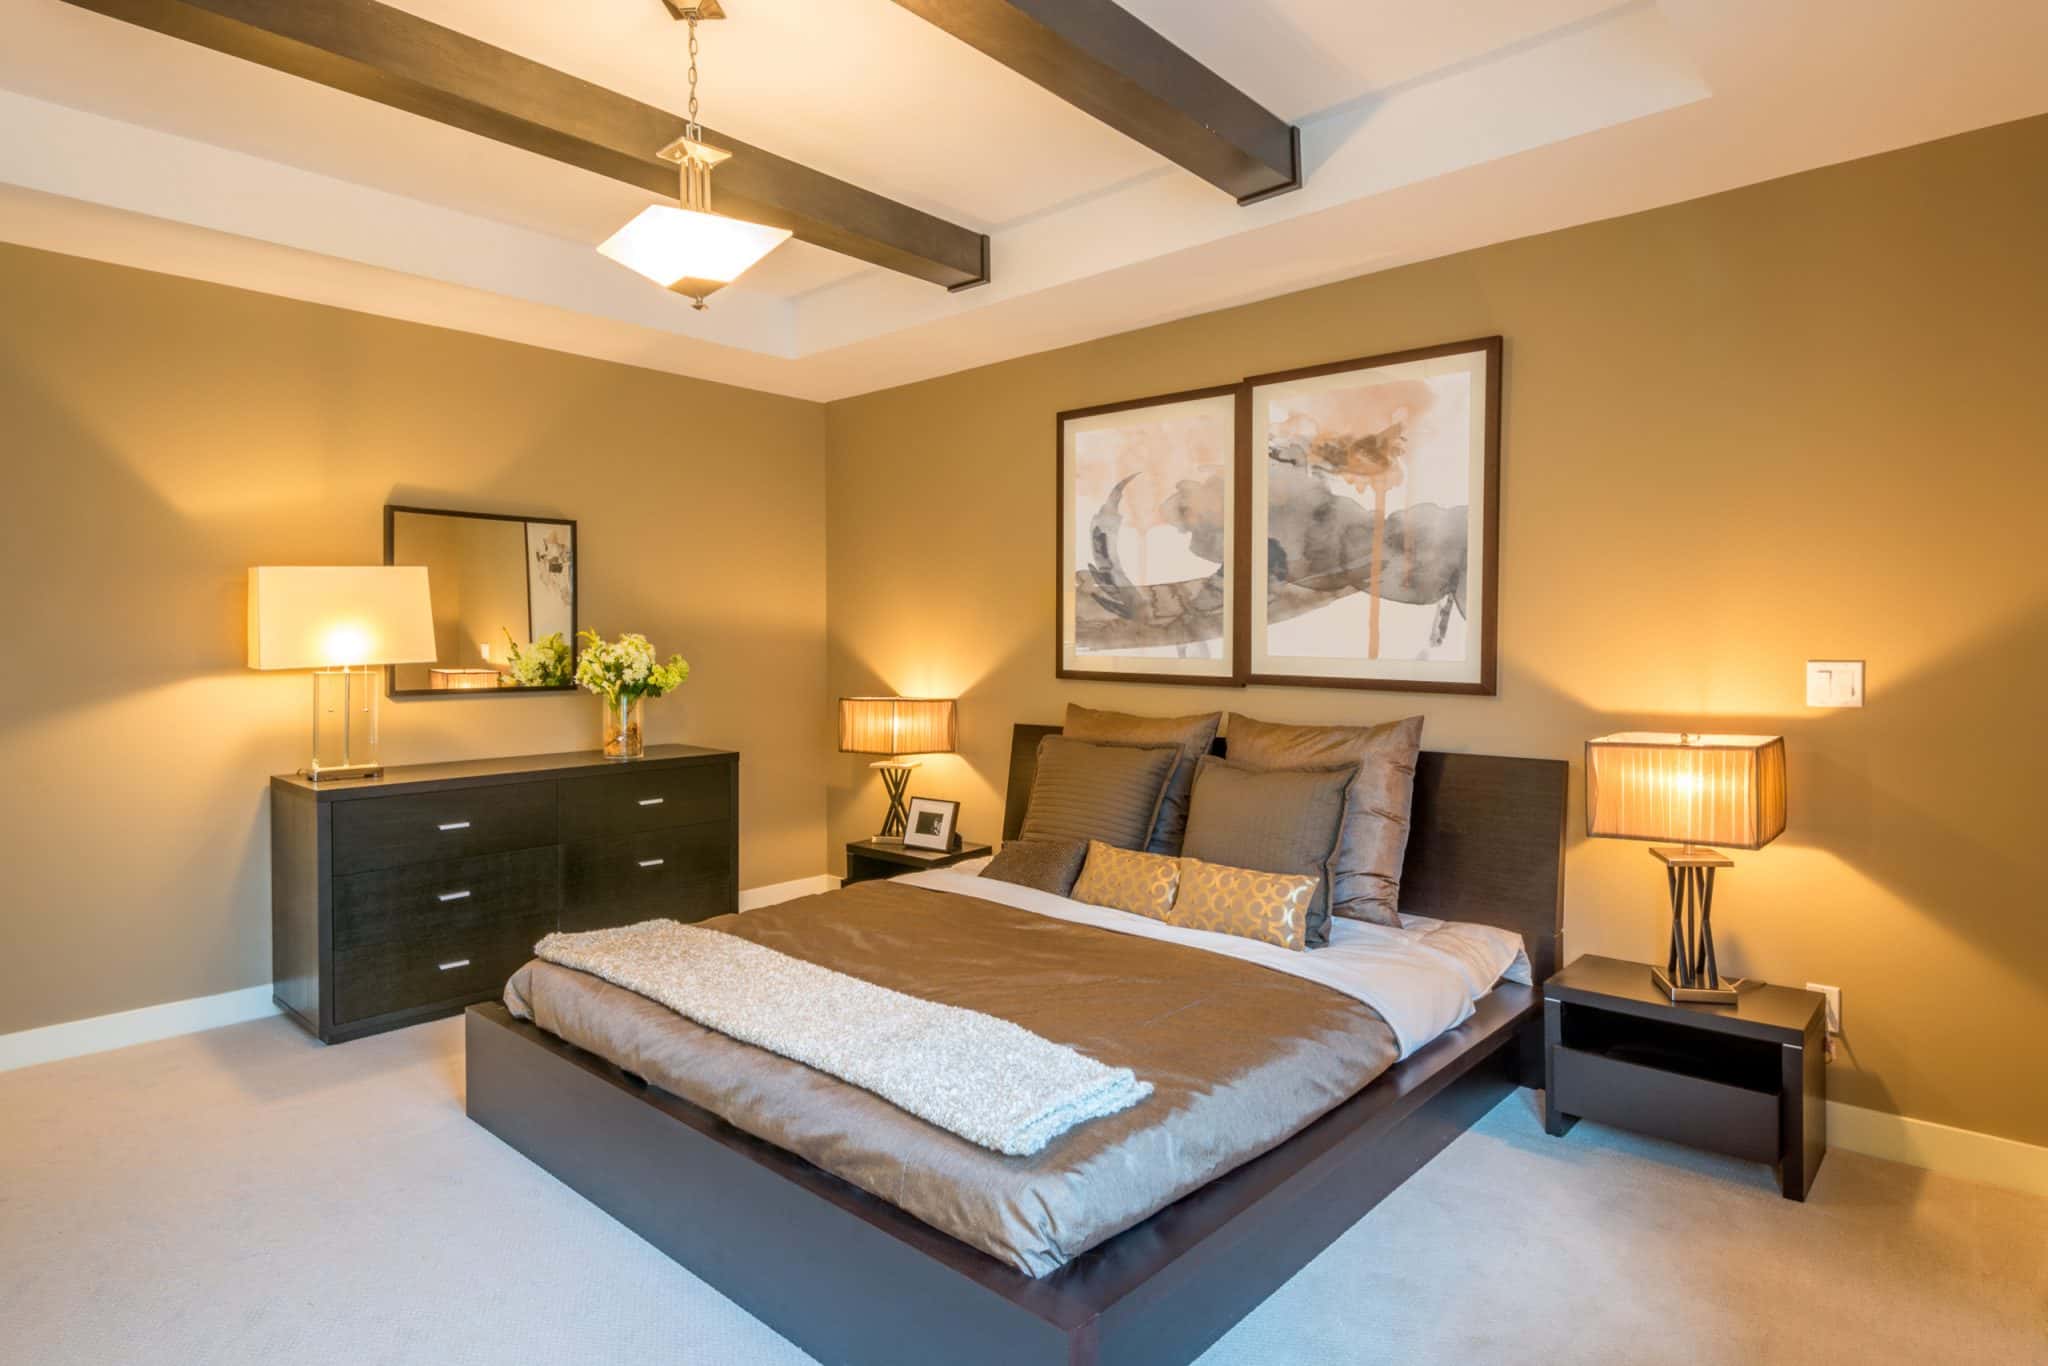 modern bright bedroom interior designer lights